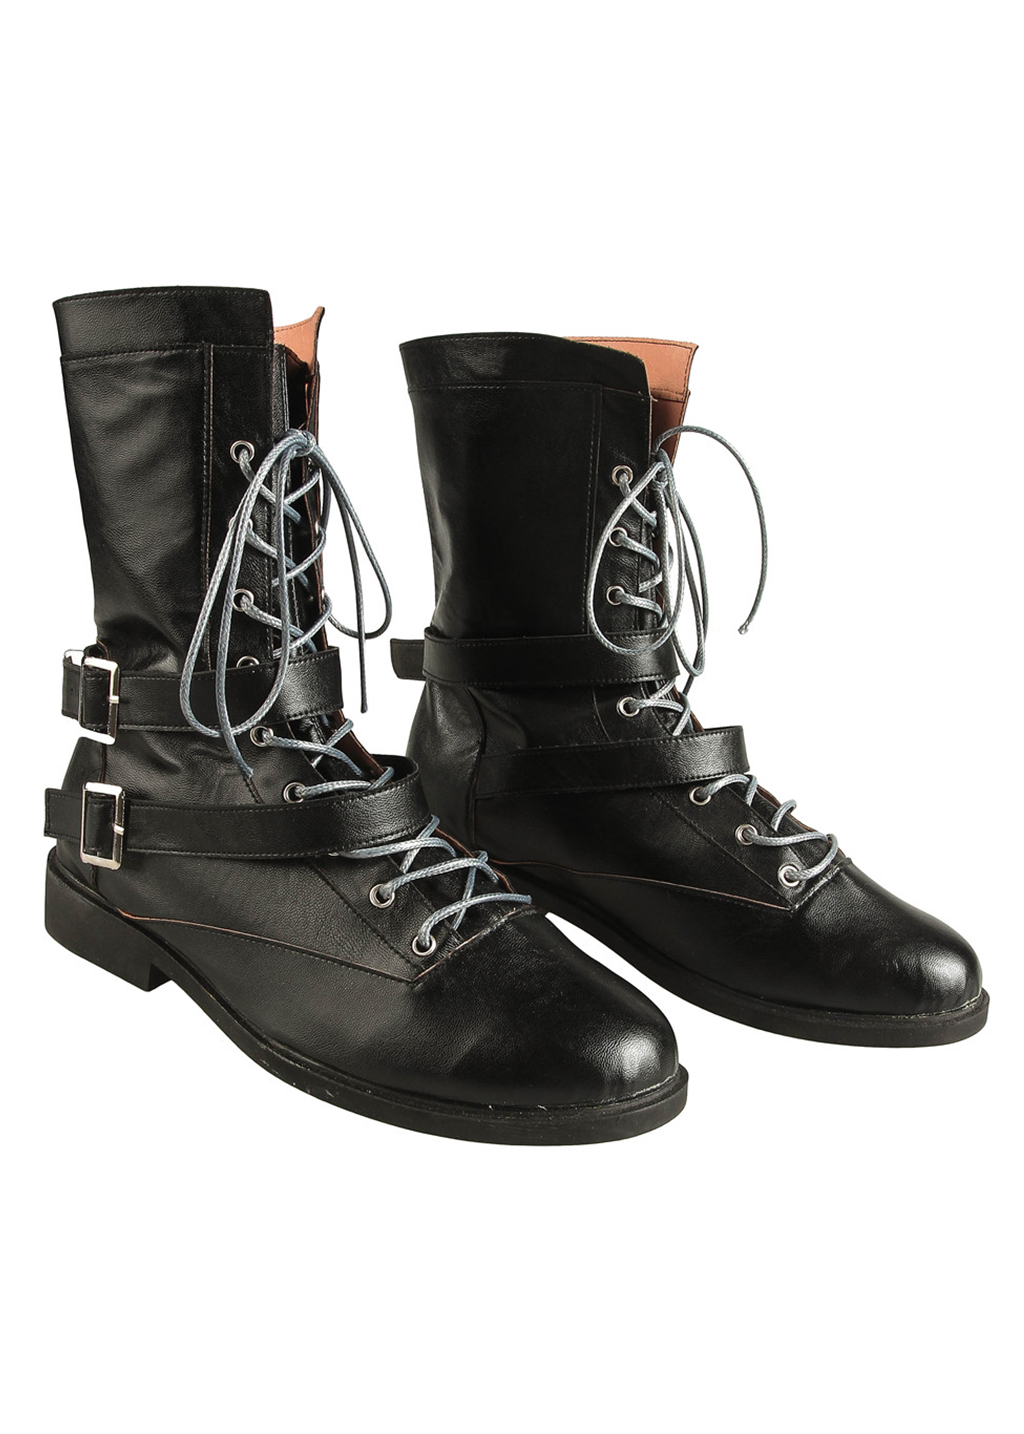 Kingdom Hearts III Shoes Men Riku Boots Cosplay